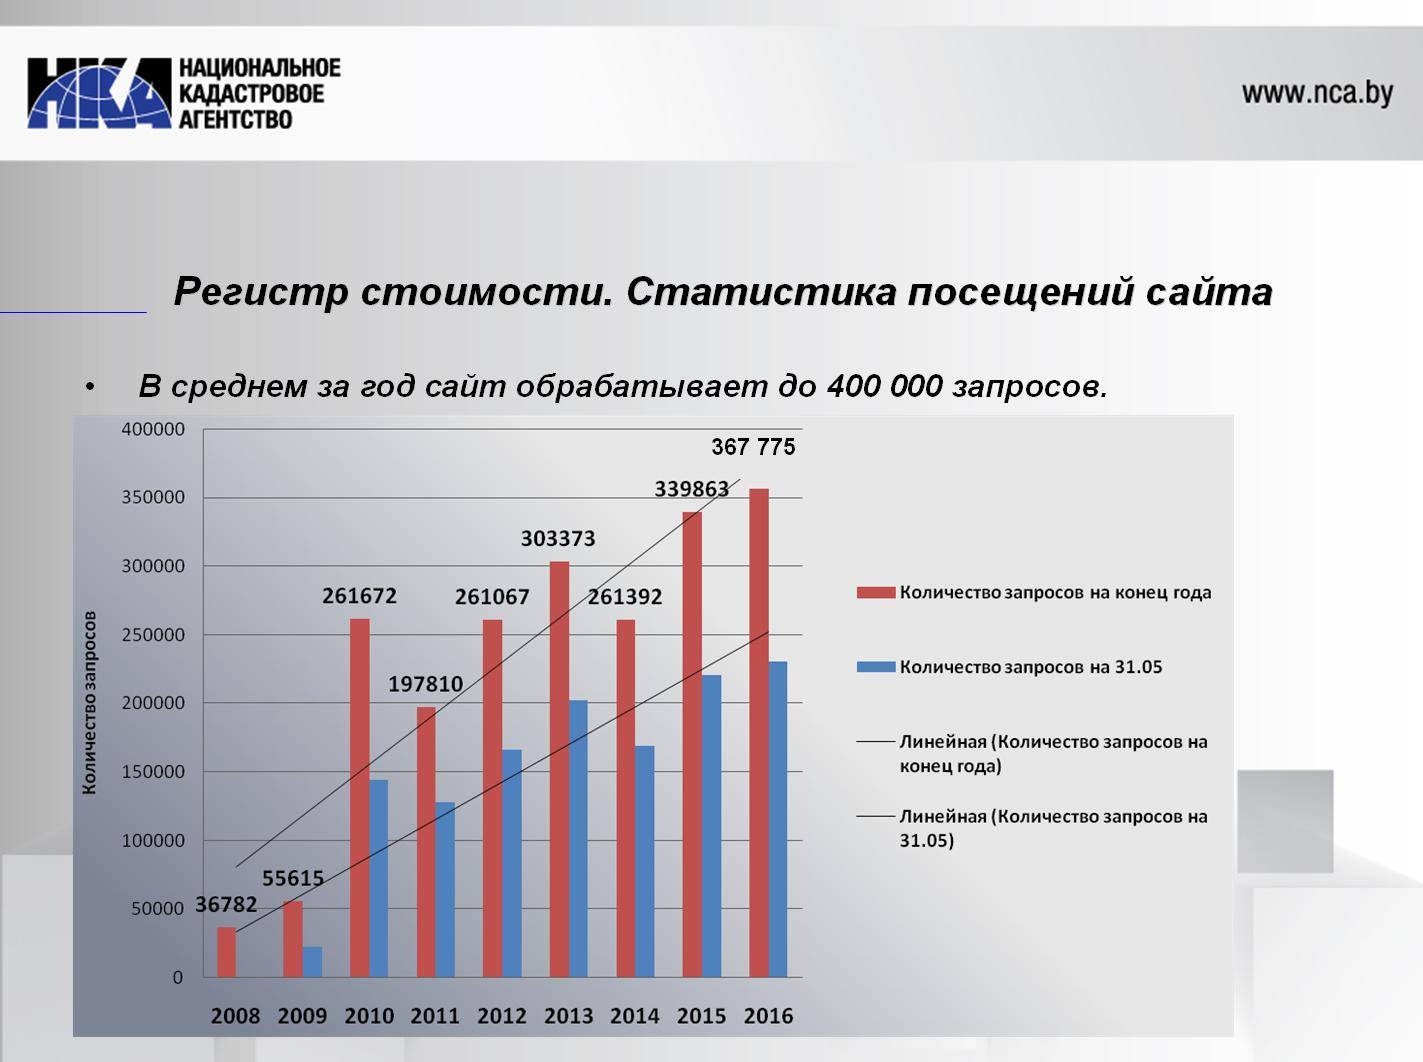 Разница между кадастровой и рыночной стоимостью :: businessman.ru